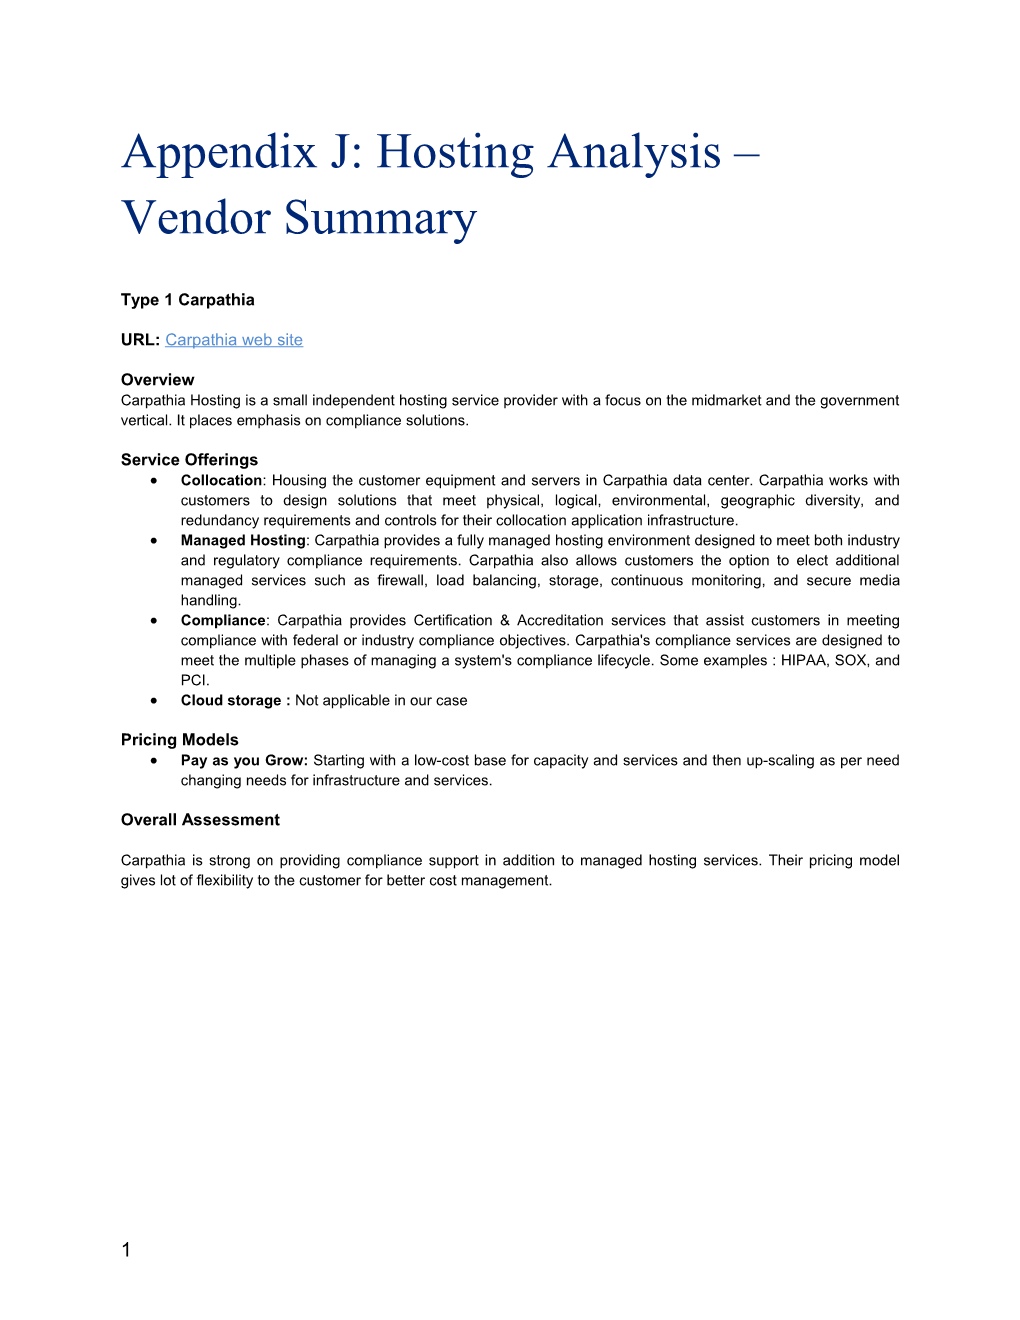 Appendix J: Hosting Analysis Vendor Summary